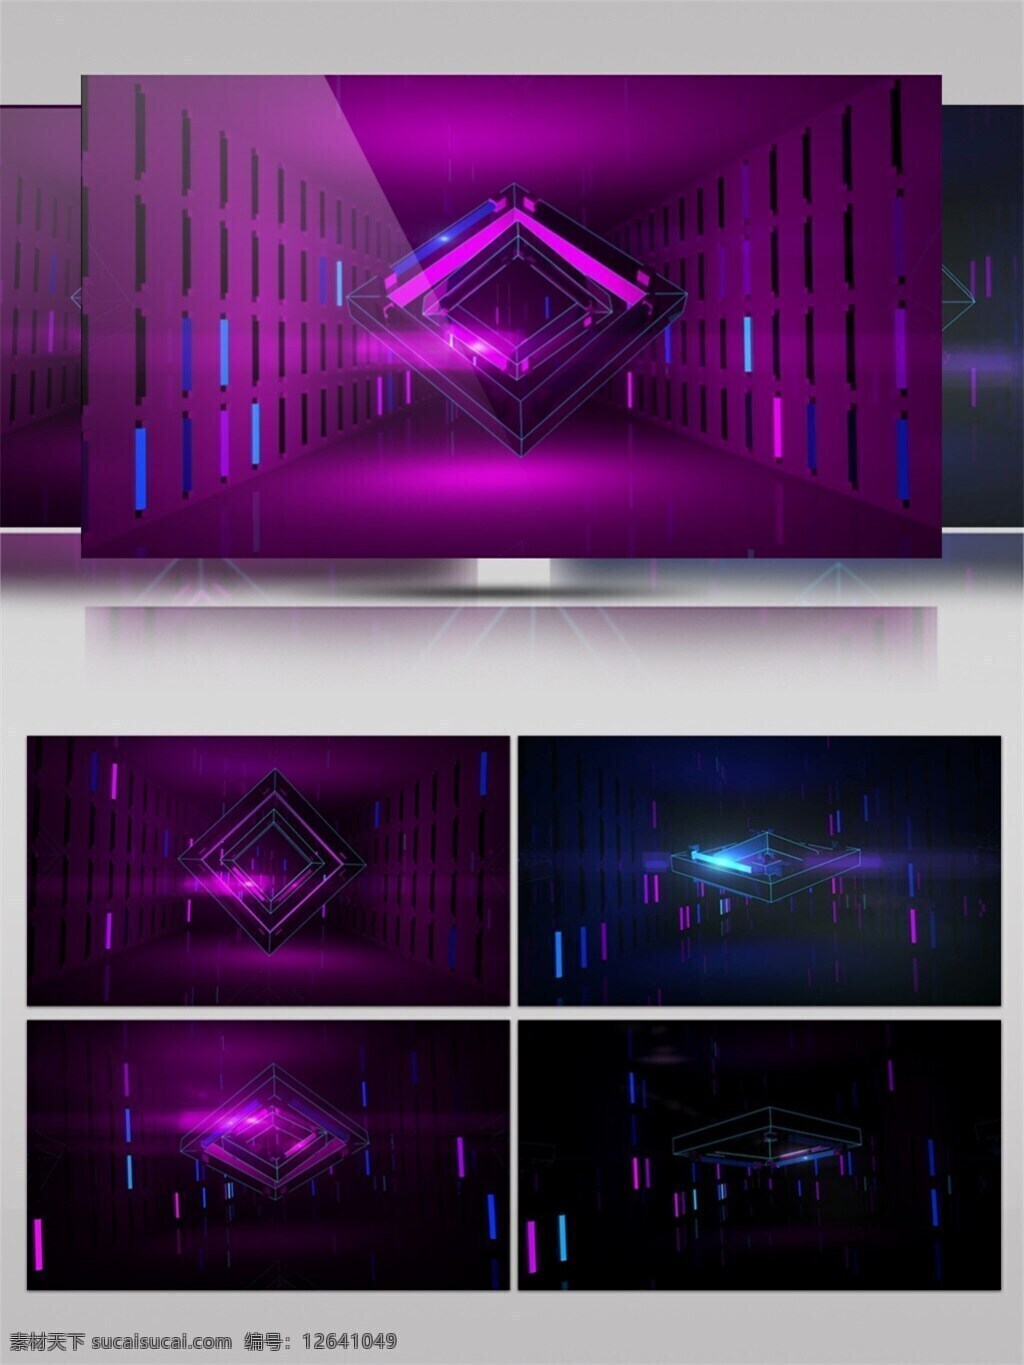 紫色 光 走廊 动态 视频 暗蓝 背景色 变色 长廊 光景素材 光芒穿梭